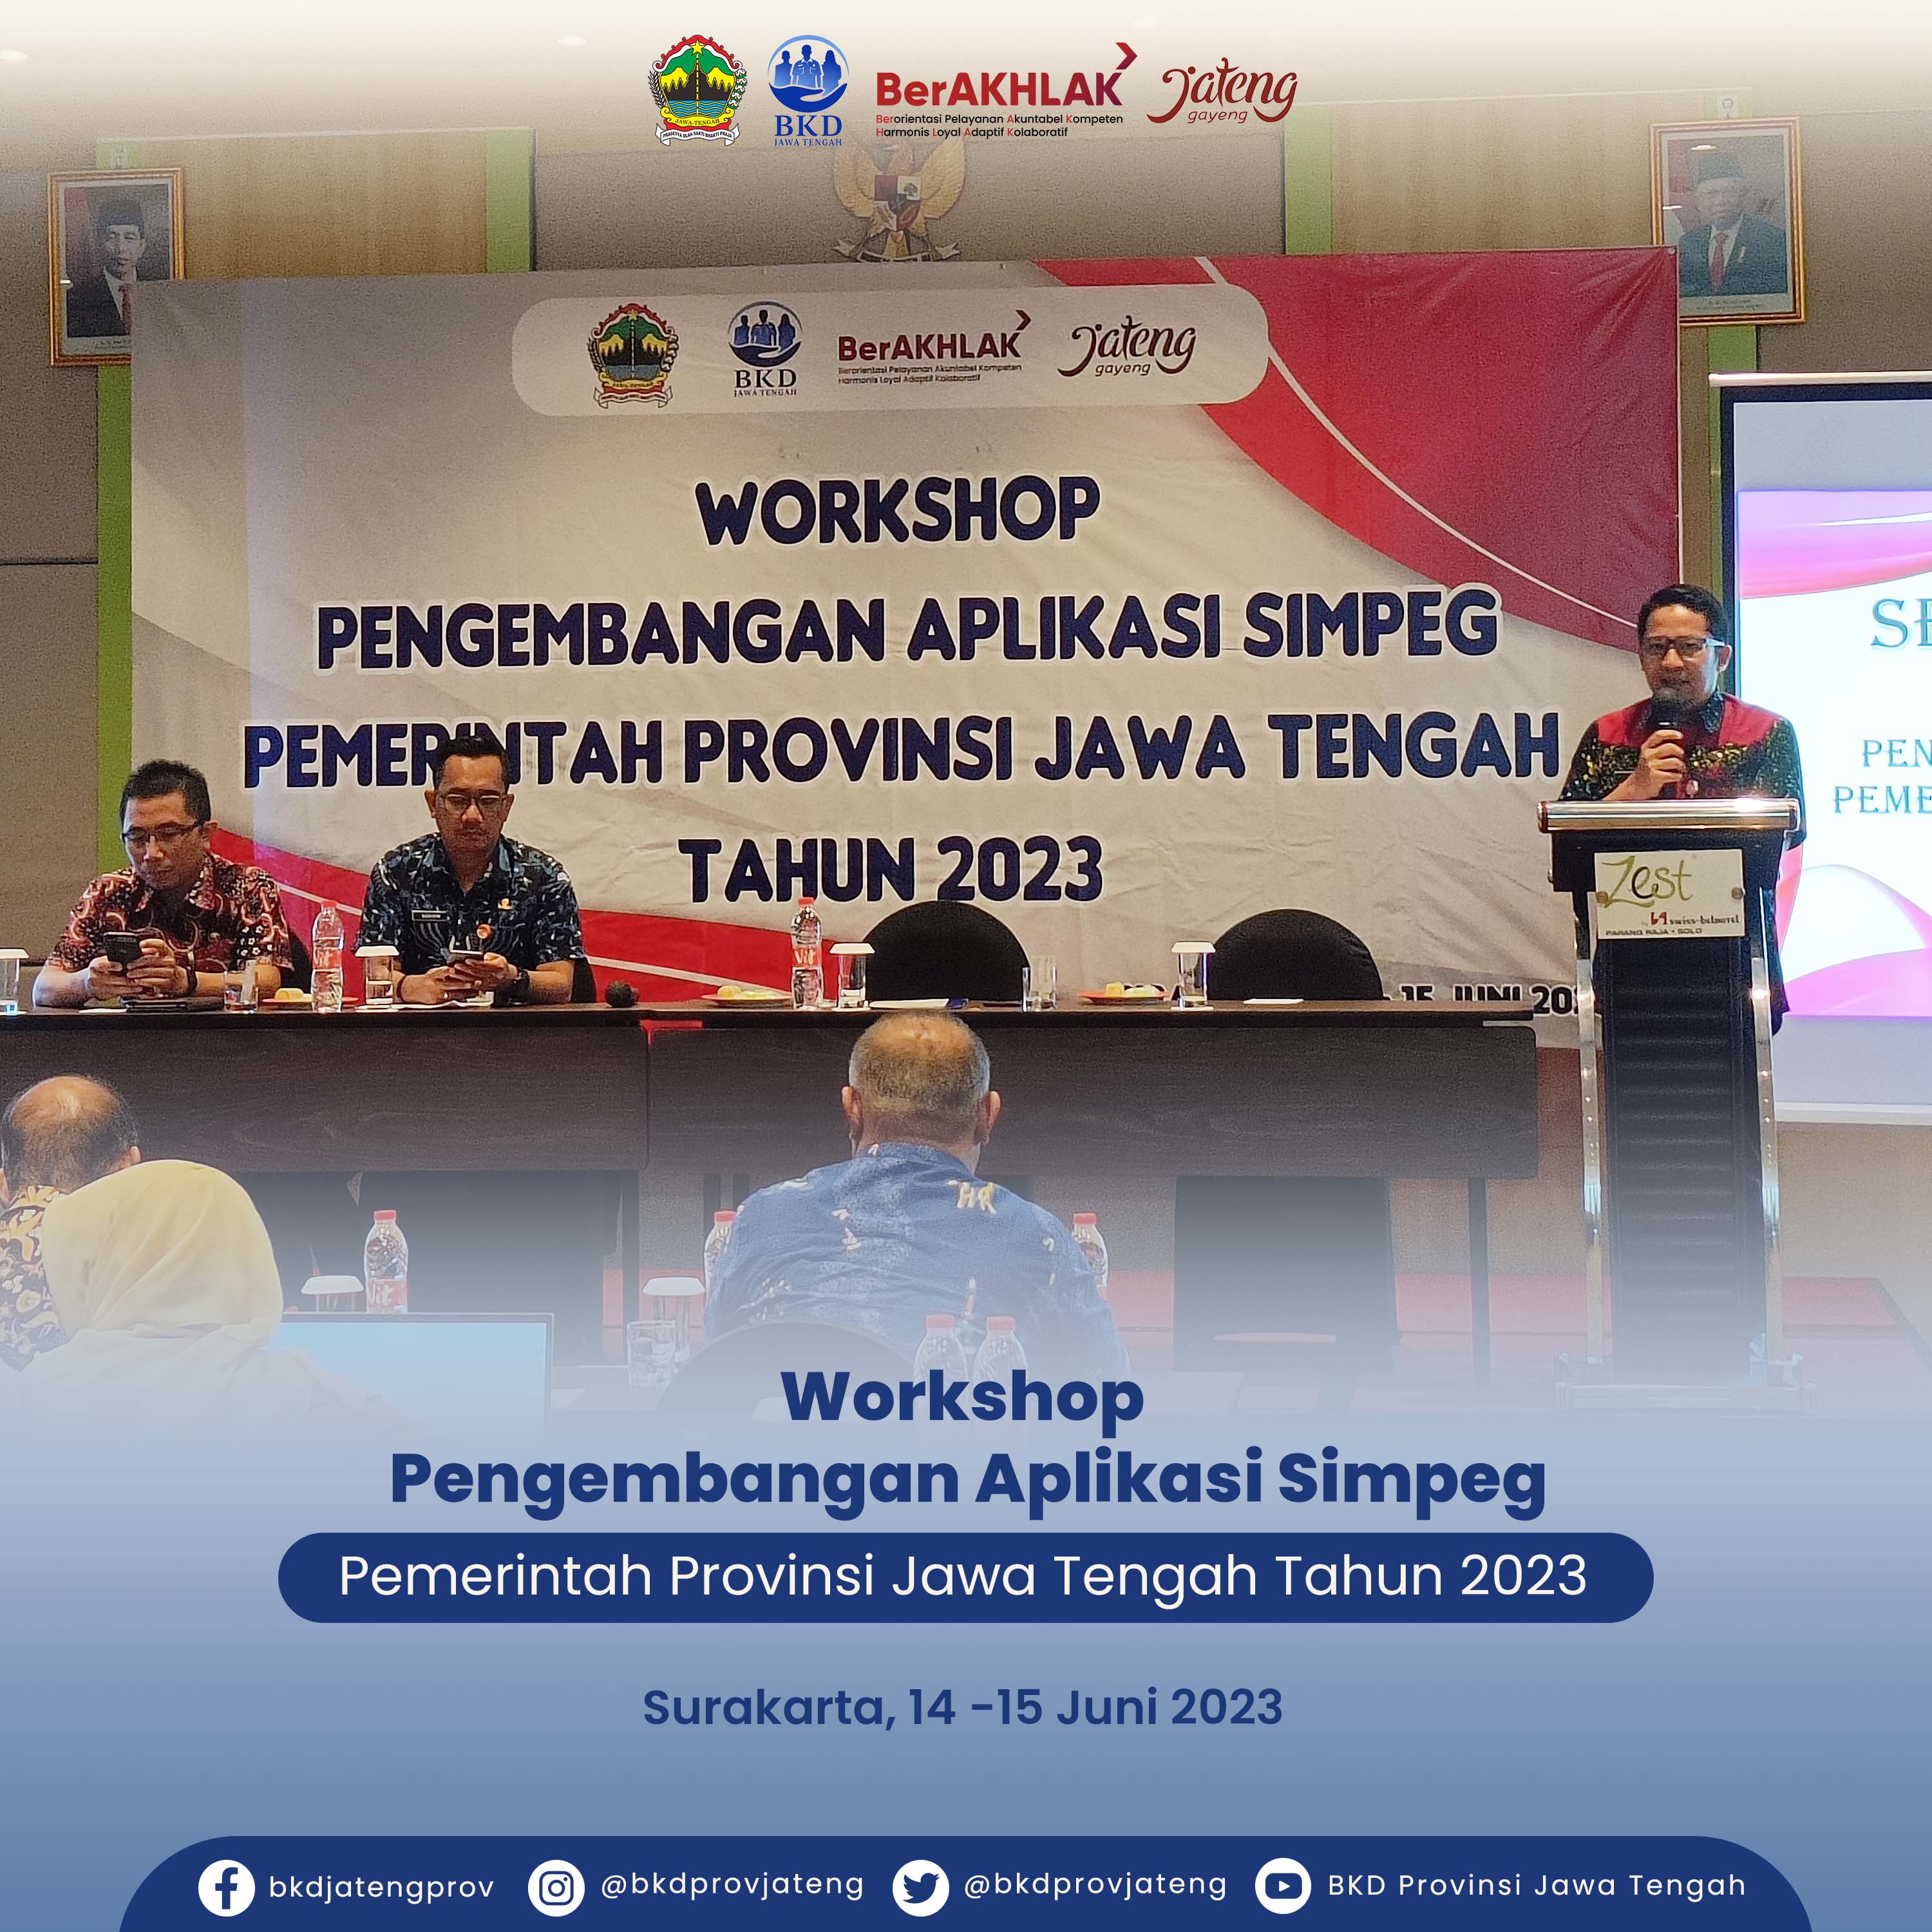 Workshop Pengembangan Aplikasi Simpeg Pemerintah Provinsi Jawa Tengah Tahun 2023